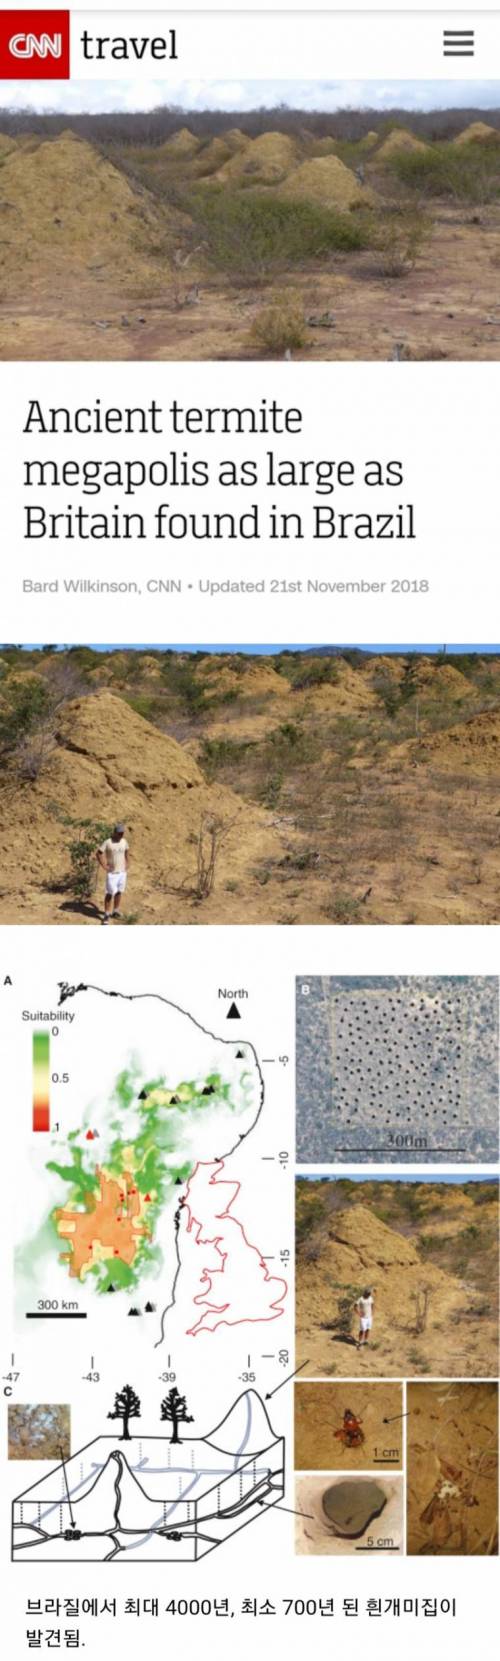 브라질에서 발견된 영국만한 크기의 개미굴.jpg